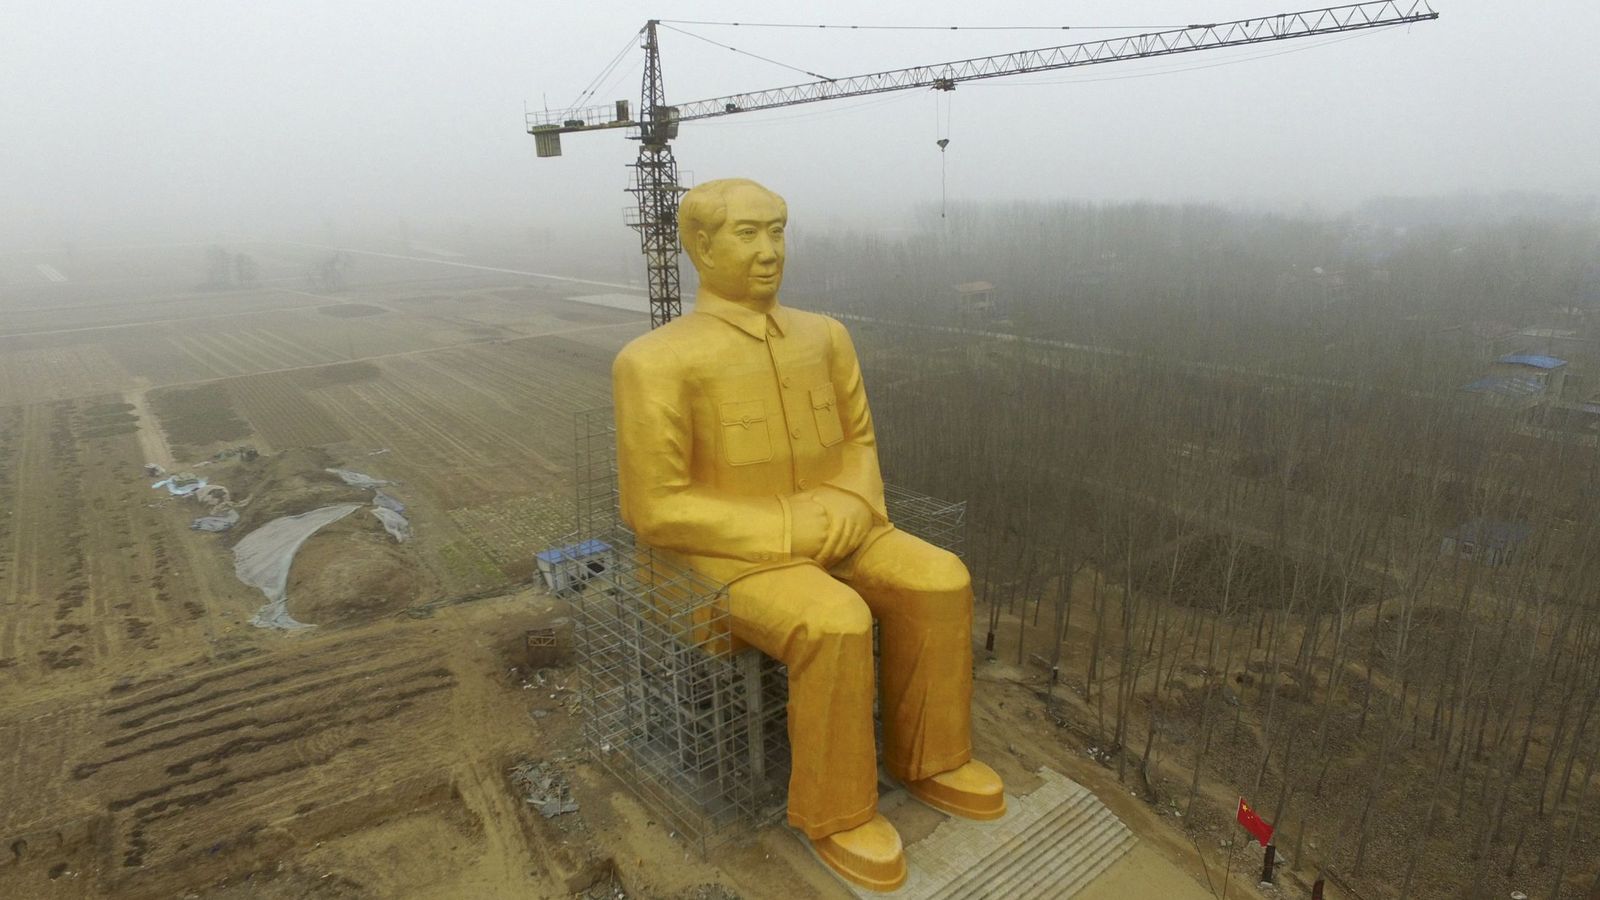 Foto: Estatua gigante de 36,6 metros de altura del presidente Mao erigida en Tongxu, en la provincia central china de Henan (Reuters)